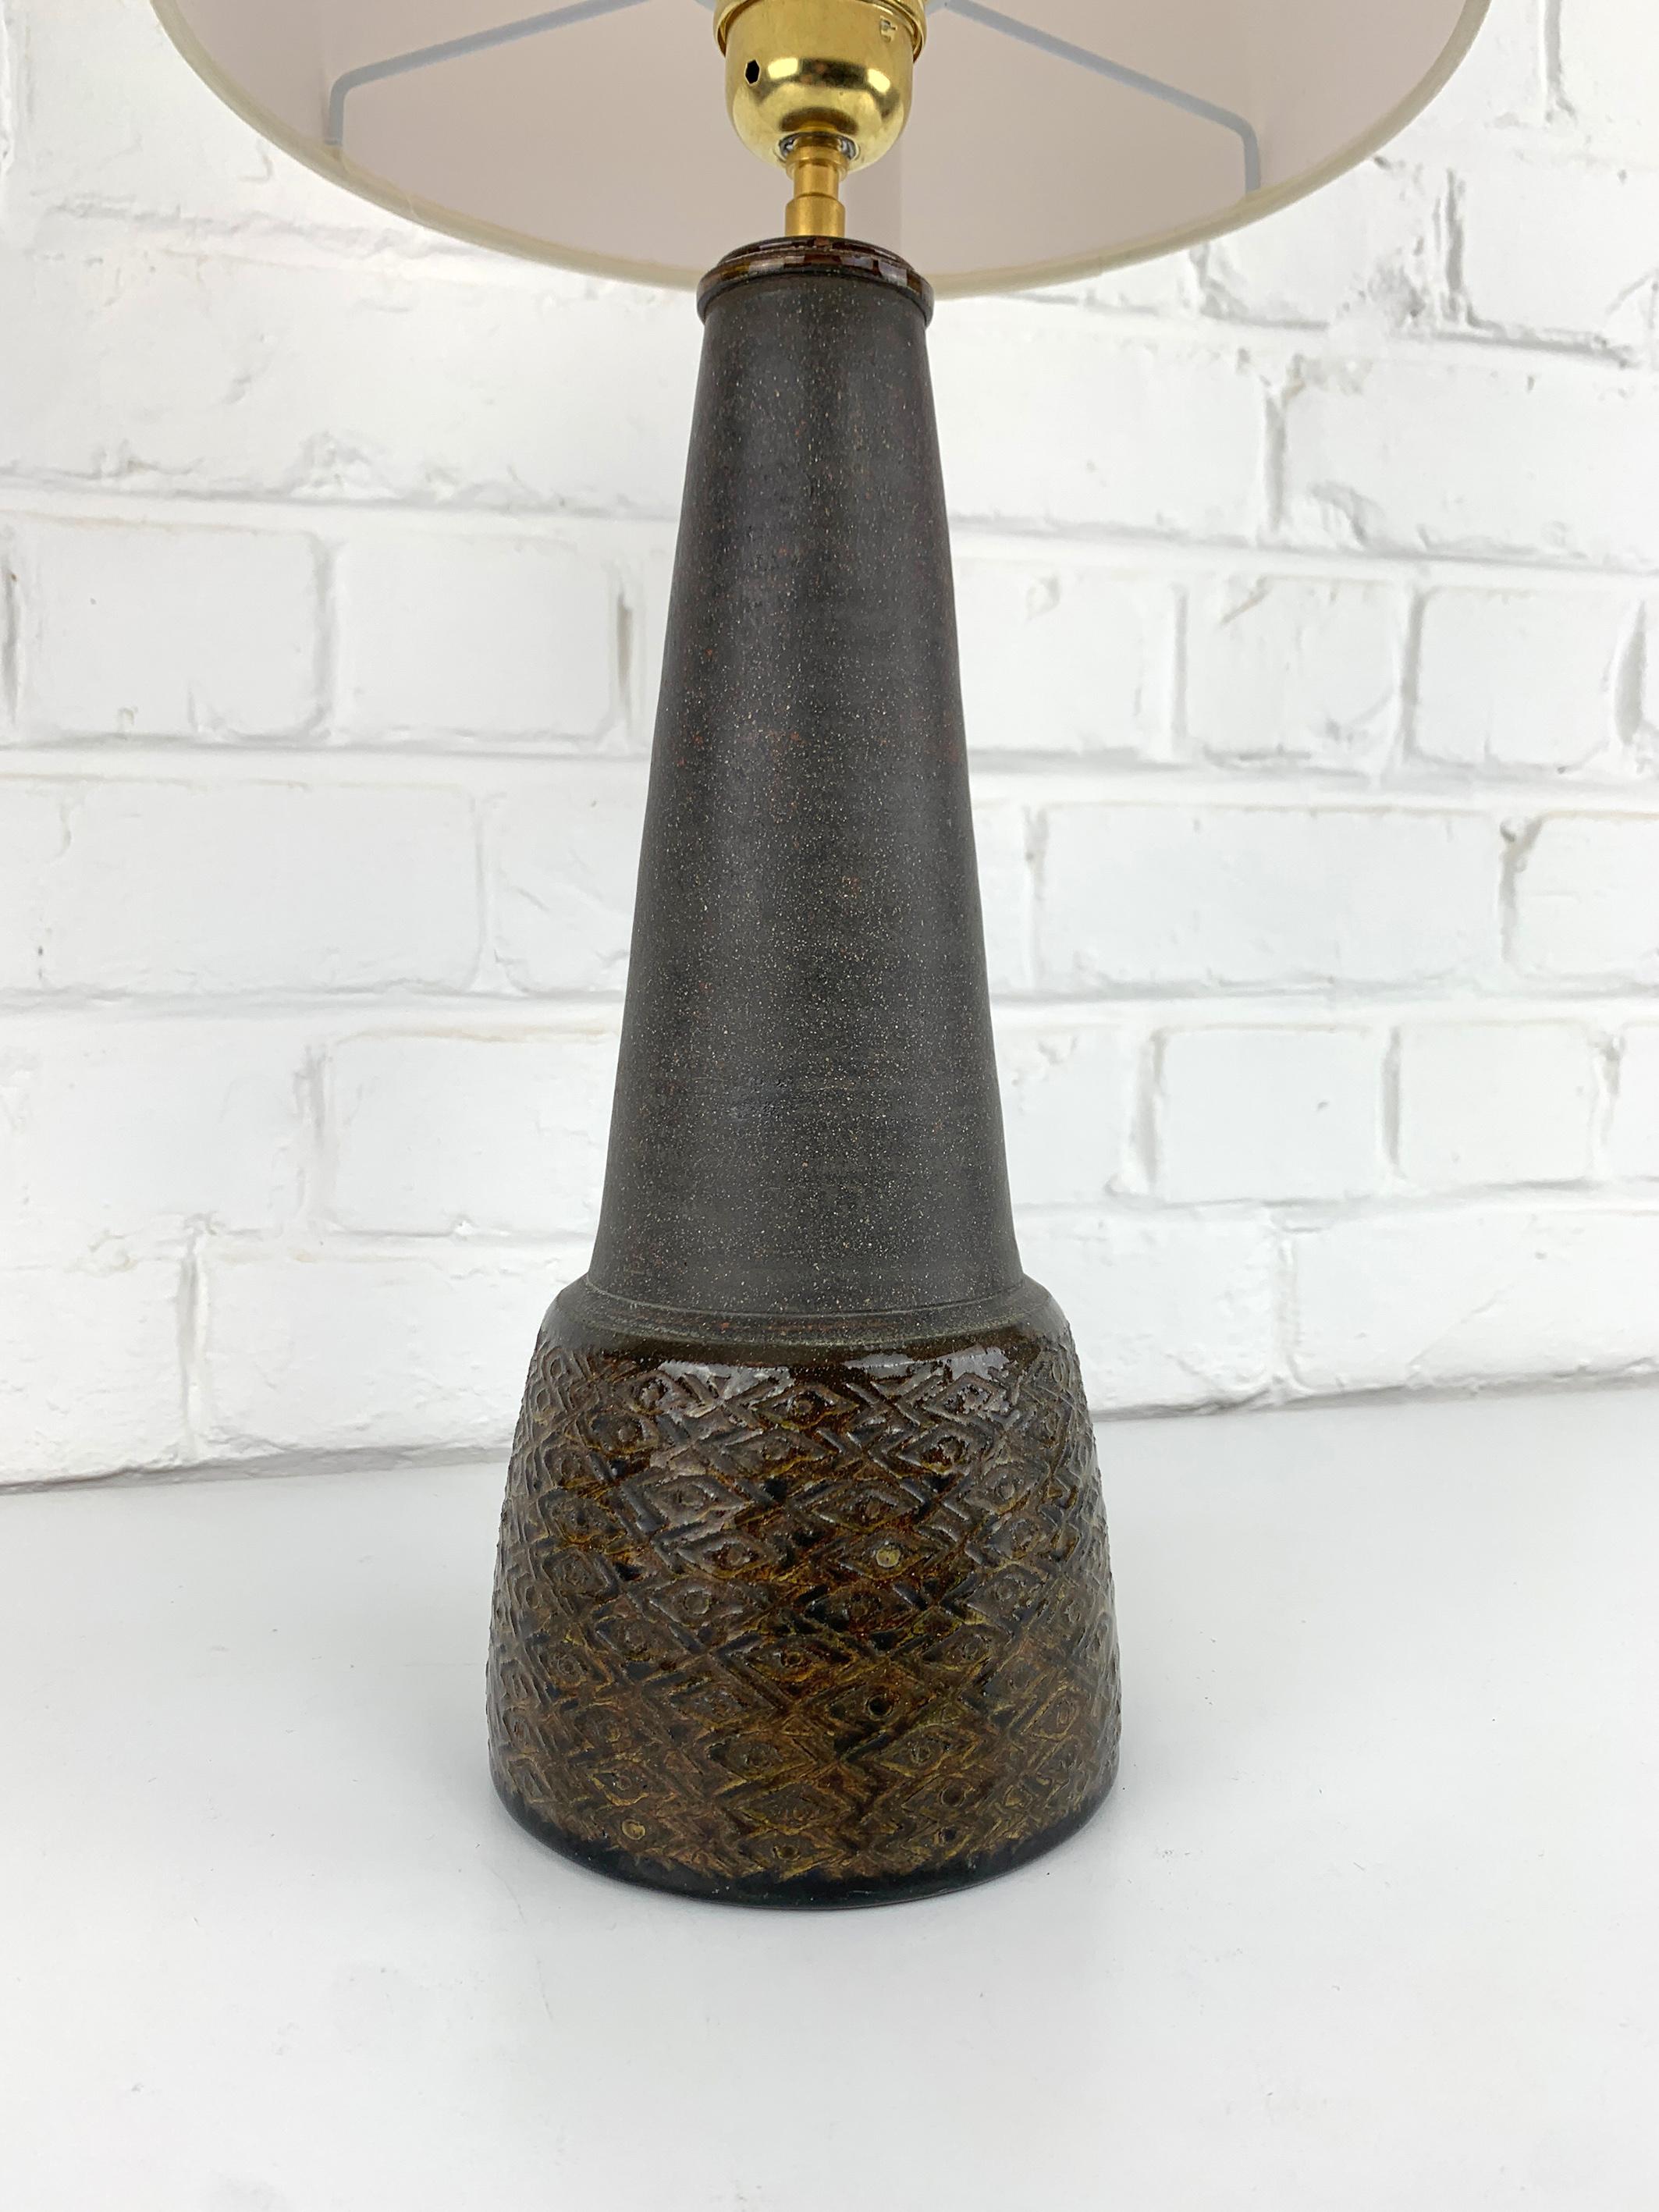 Scandinavian Modern Danish Modernist Ceramic Table Lamp, Stoneware, Nils Kähler for HAK Denmark 1960